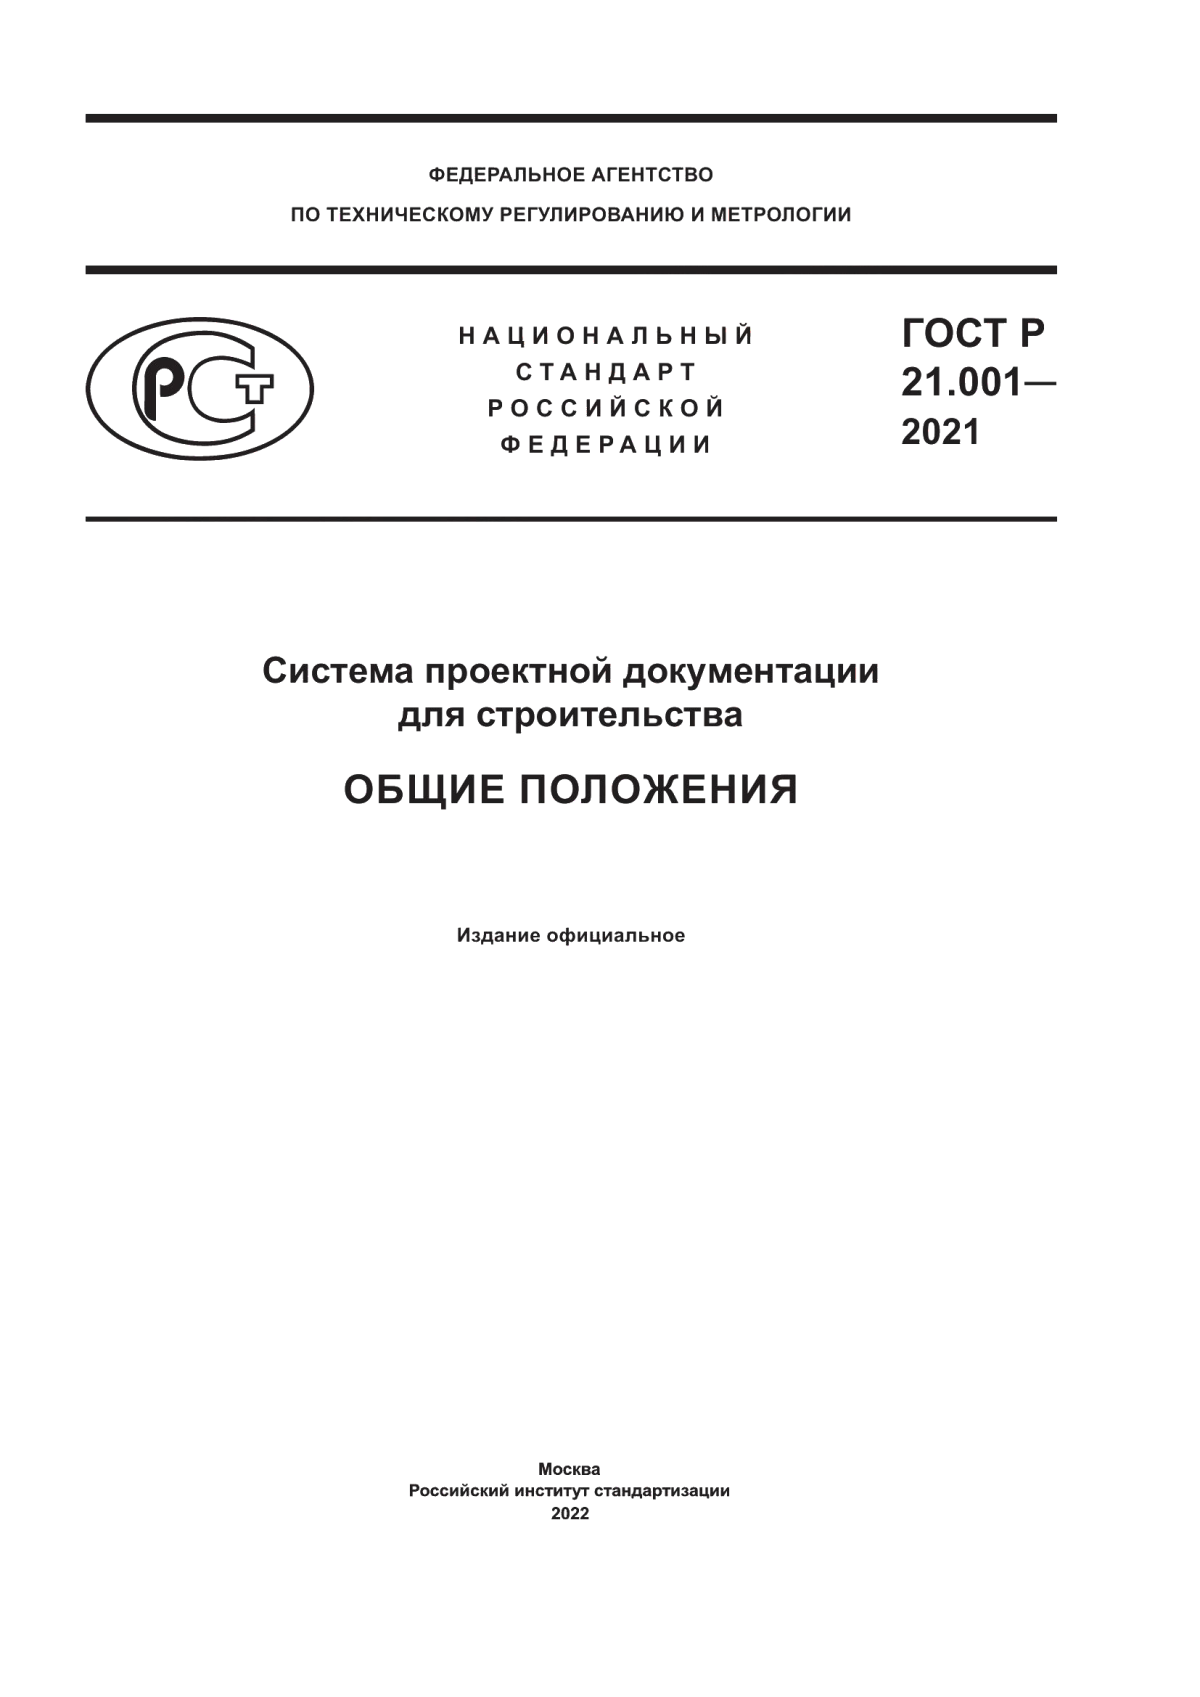 ГОСТ Р 21.001-2021 Система проектной документации для строительства. Общие положения